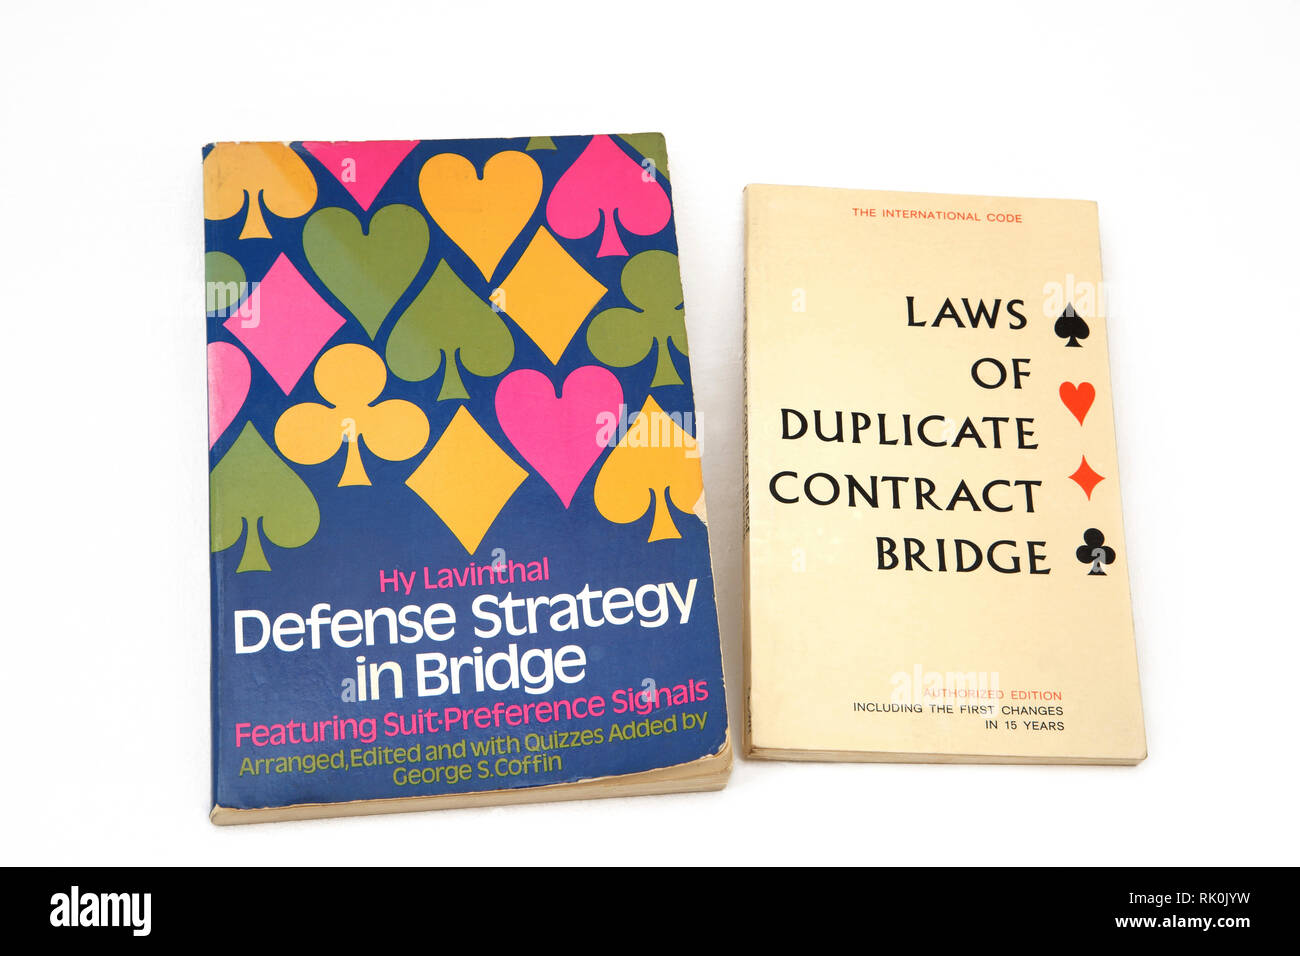 Libros sobre Puente - Estrategia de Defensa en puente y leyes de contrato Duplicate Bridge Foto de stock